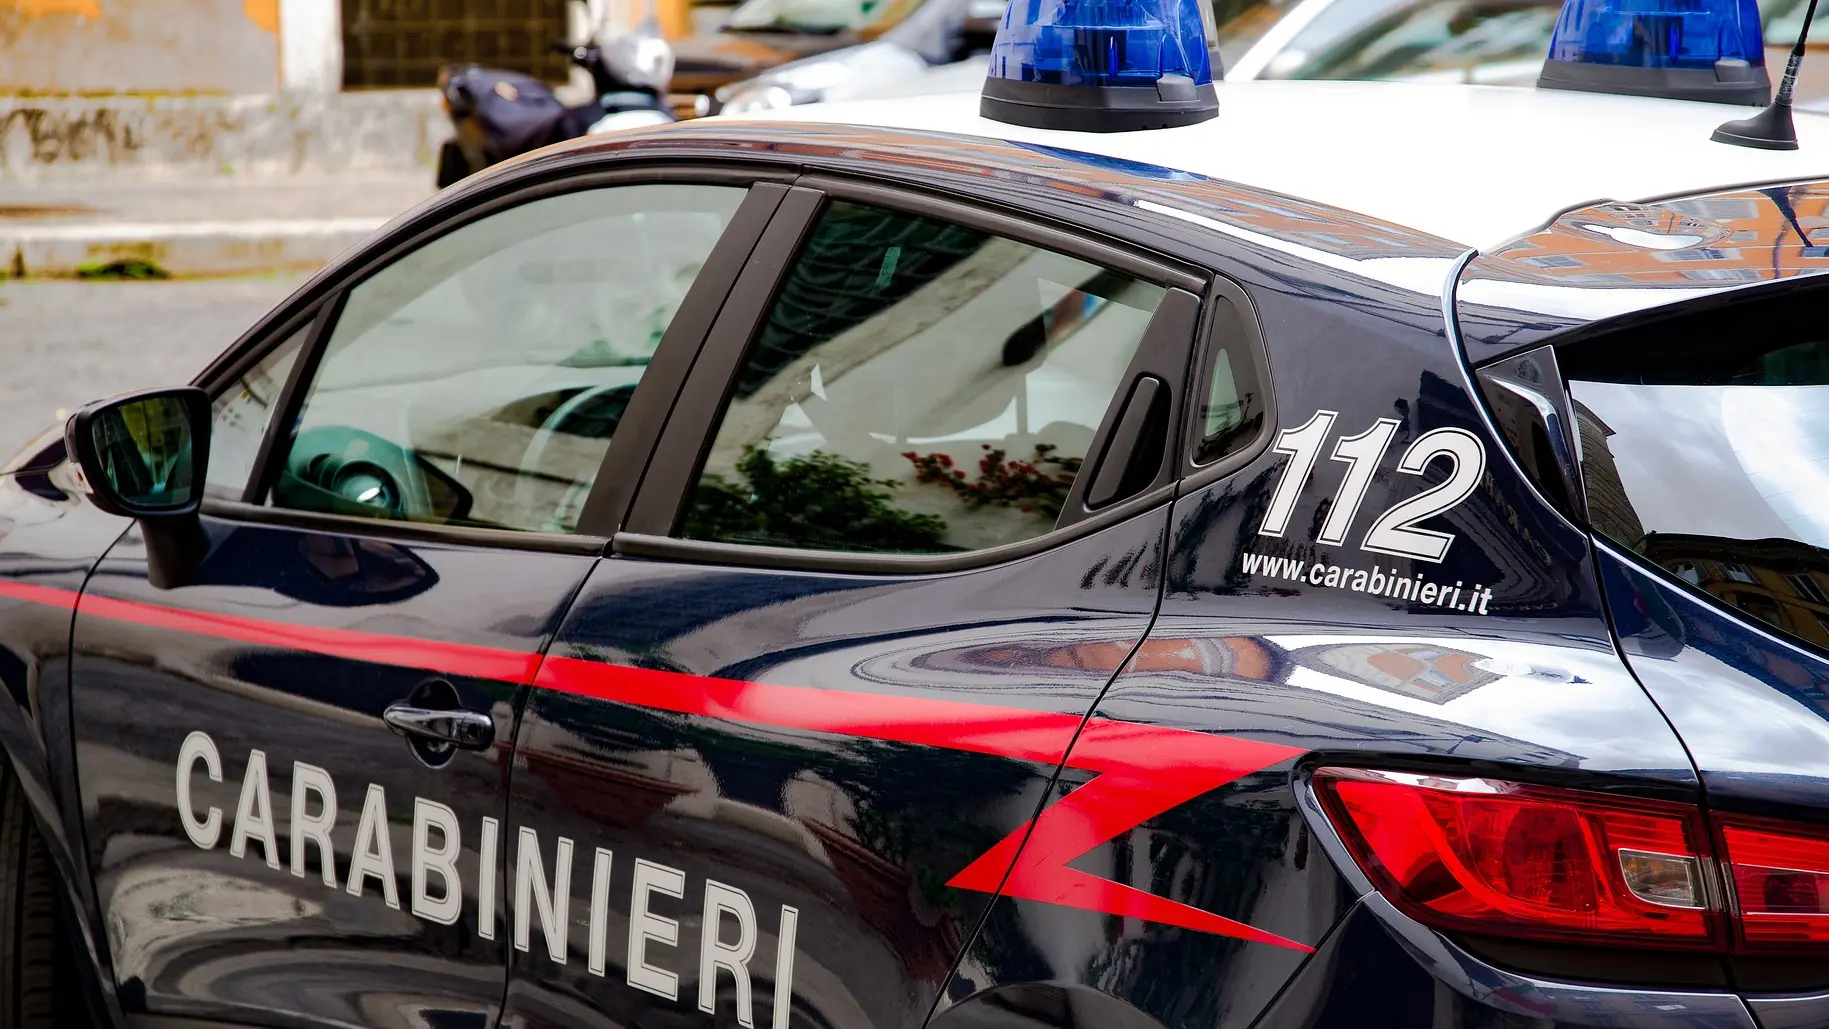 italijanska policija karabinjeri pixabay-1667758313499.webp